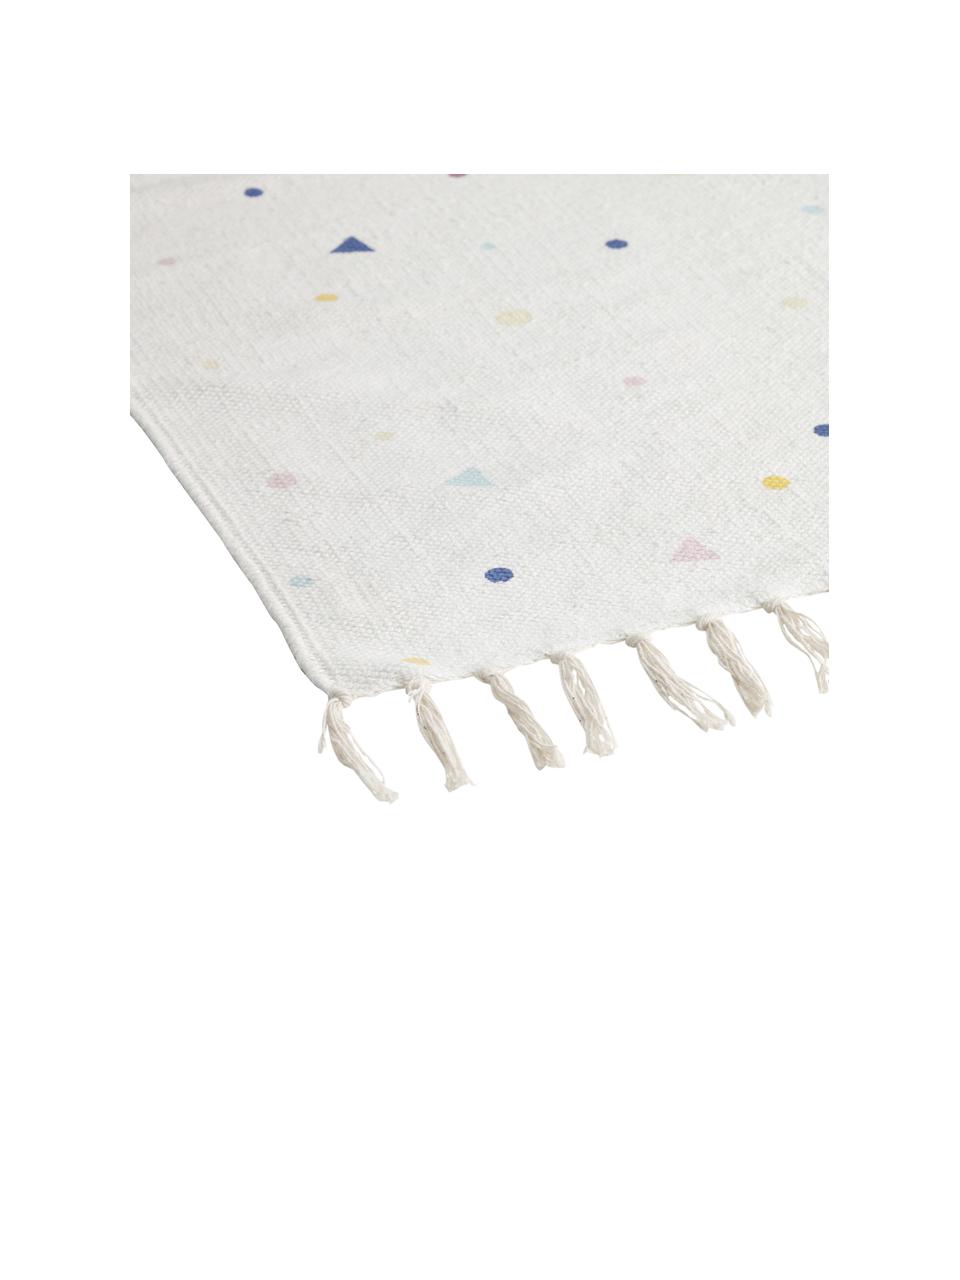 Katoenen vloerkleed Tainka met gekleurd patroon en franjes, 95% katoen, 5% polyester, Wit blauw, geel, roze, B 65 x L 110 cm (maat XS)